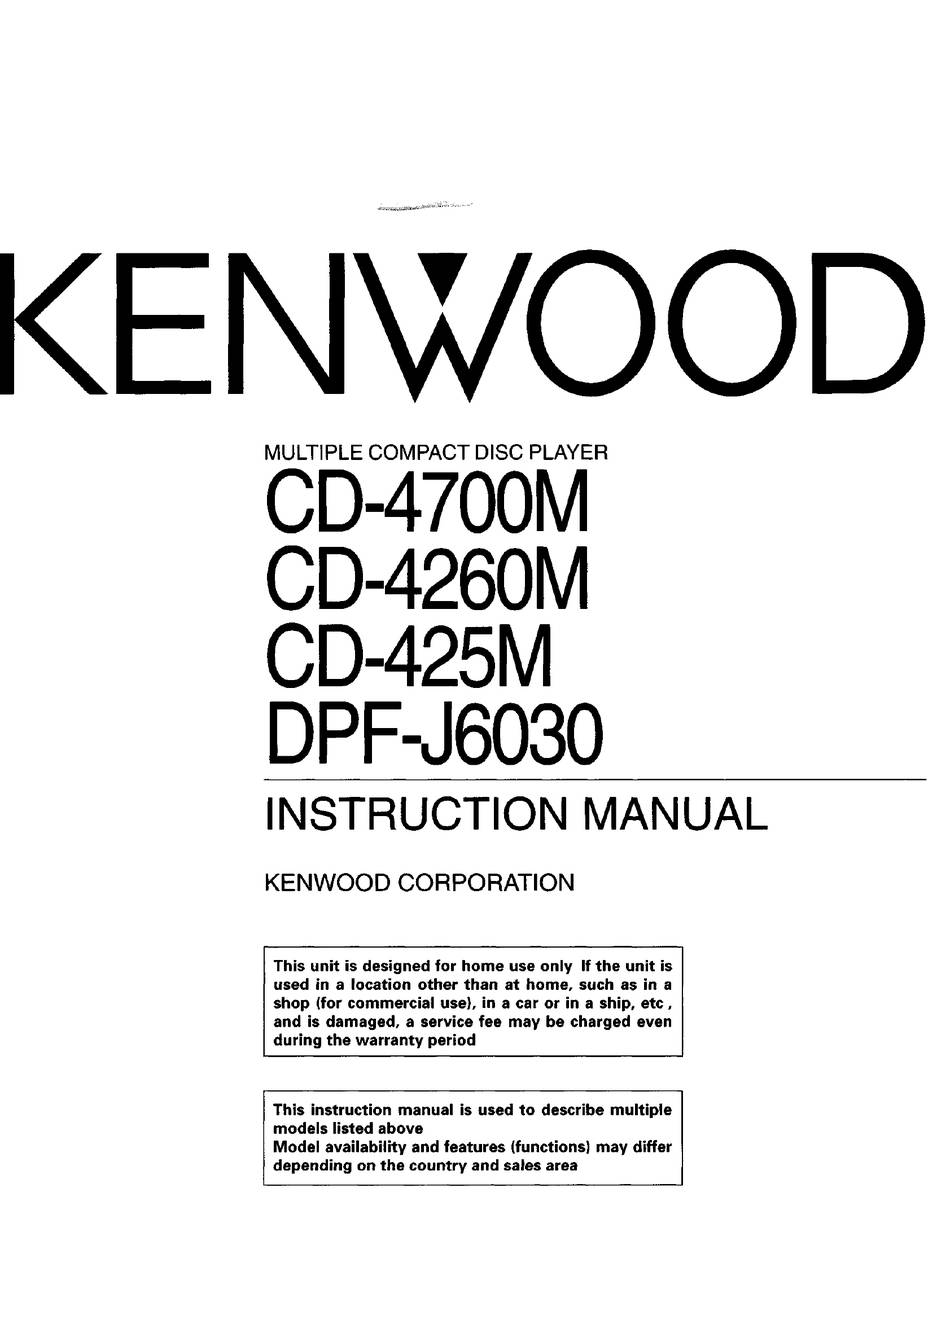 Kenwood CD-4700M